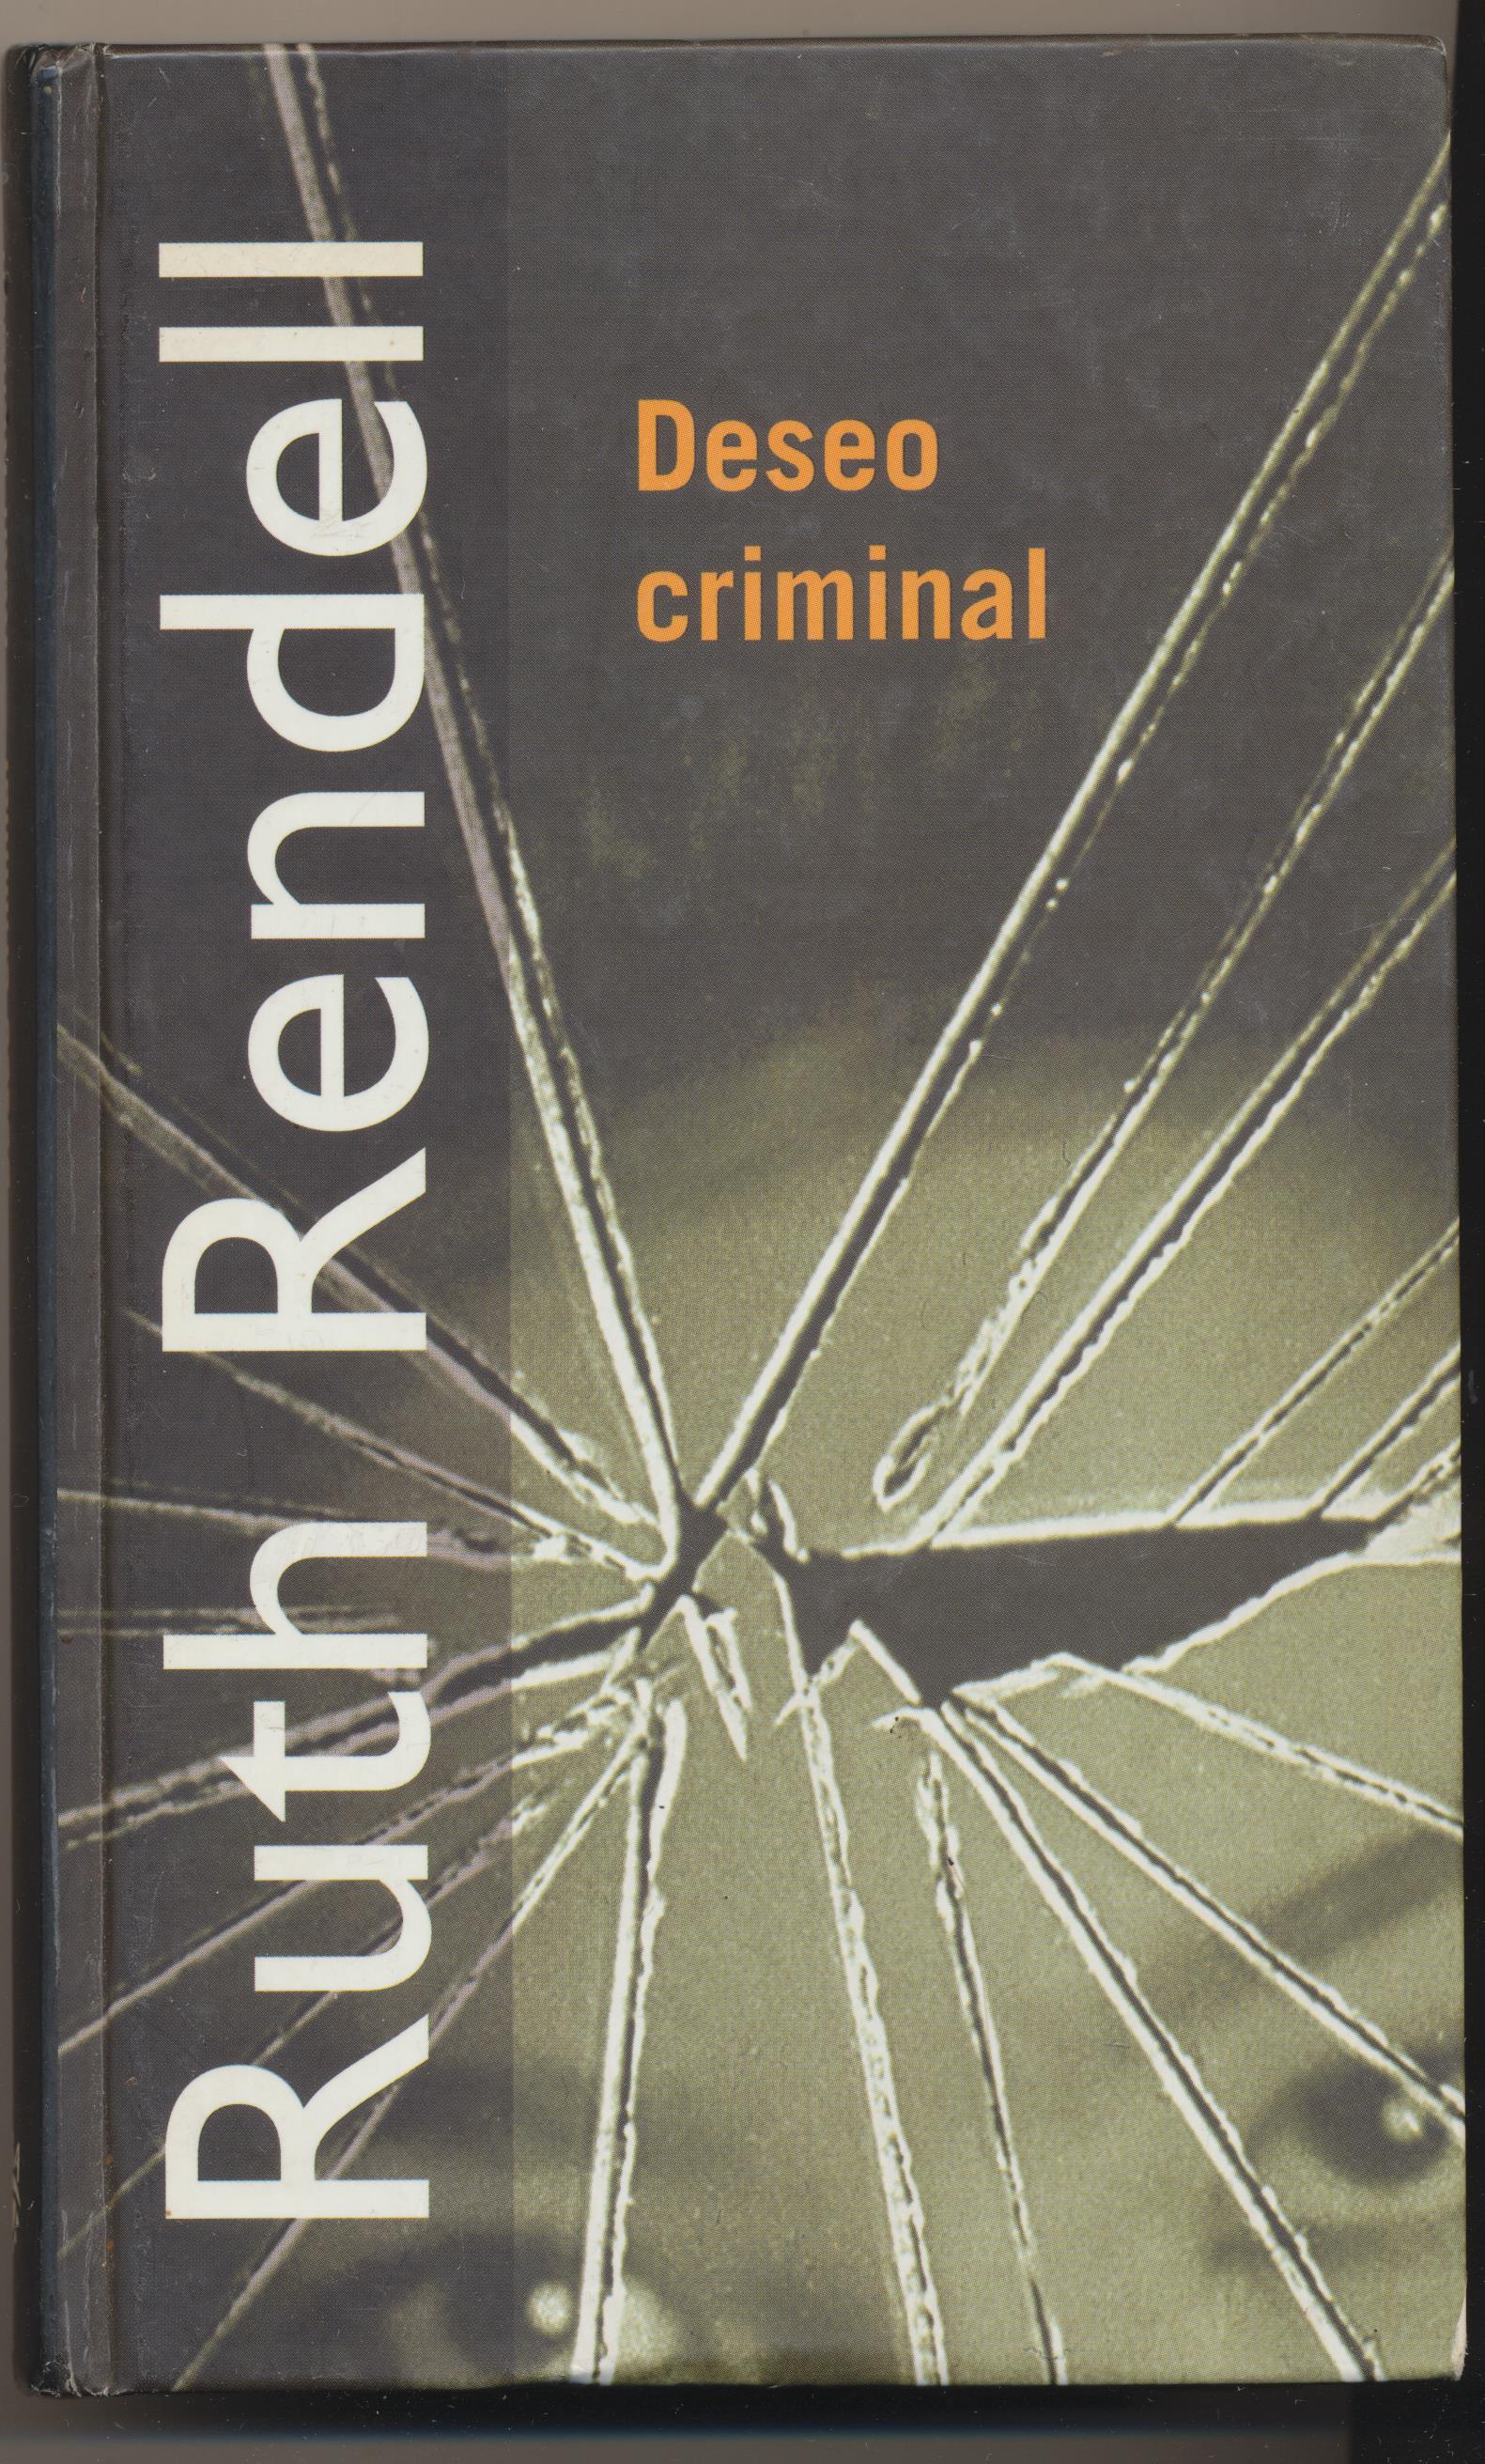 Rendell. Deseo Criminal. R.B.A. 2000